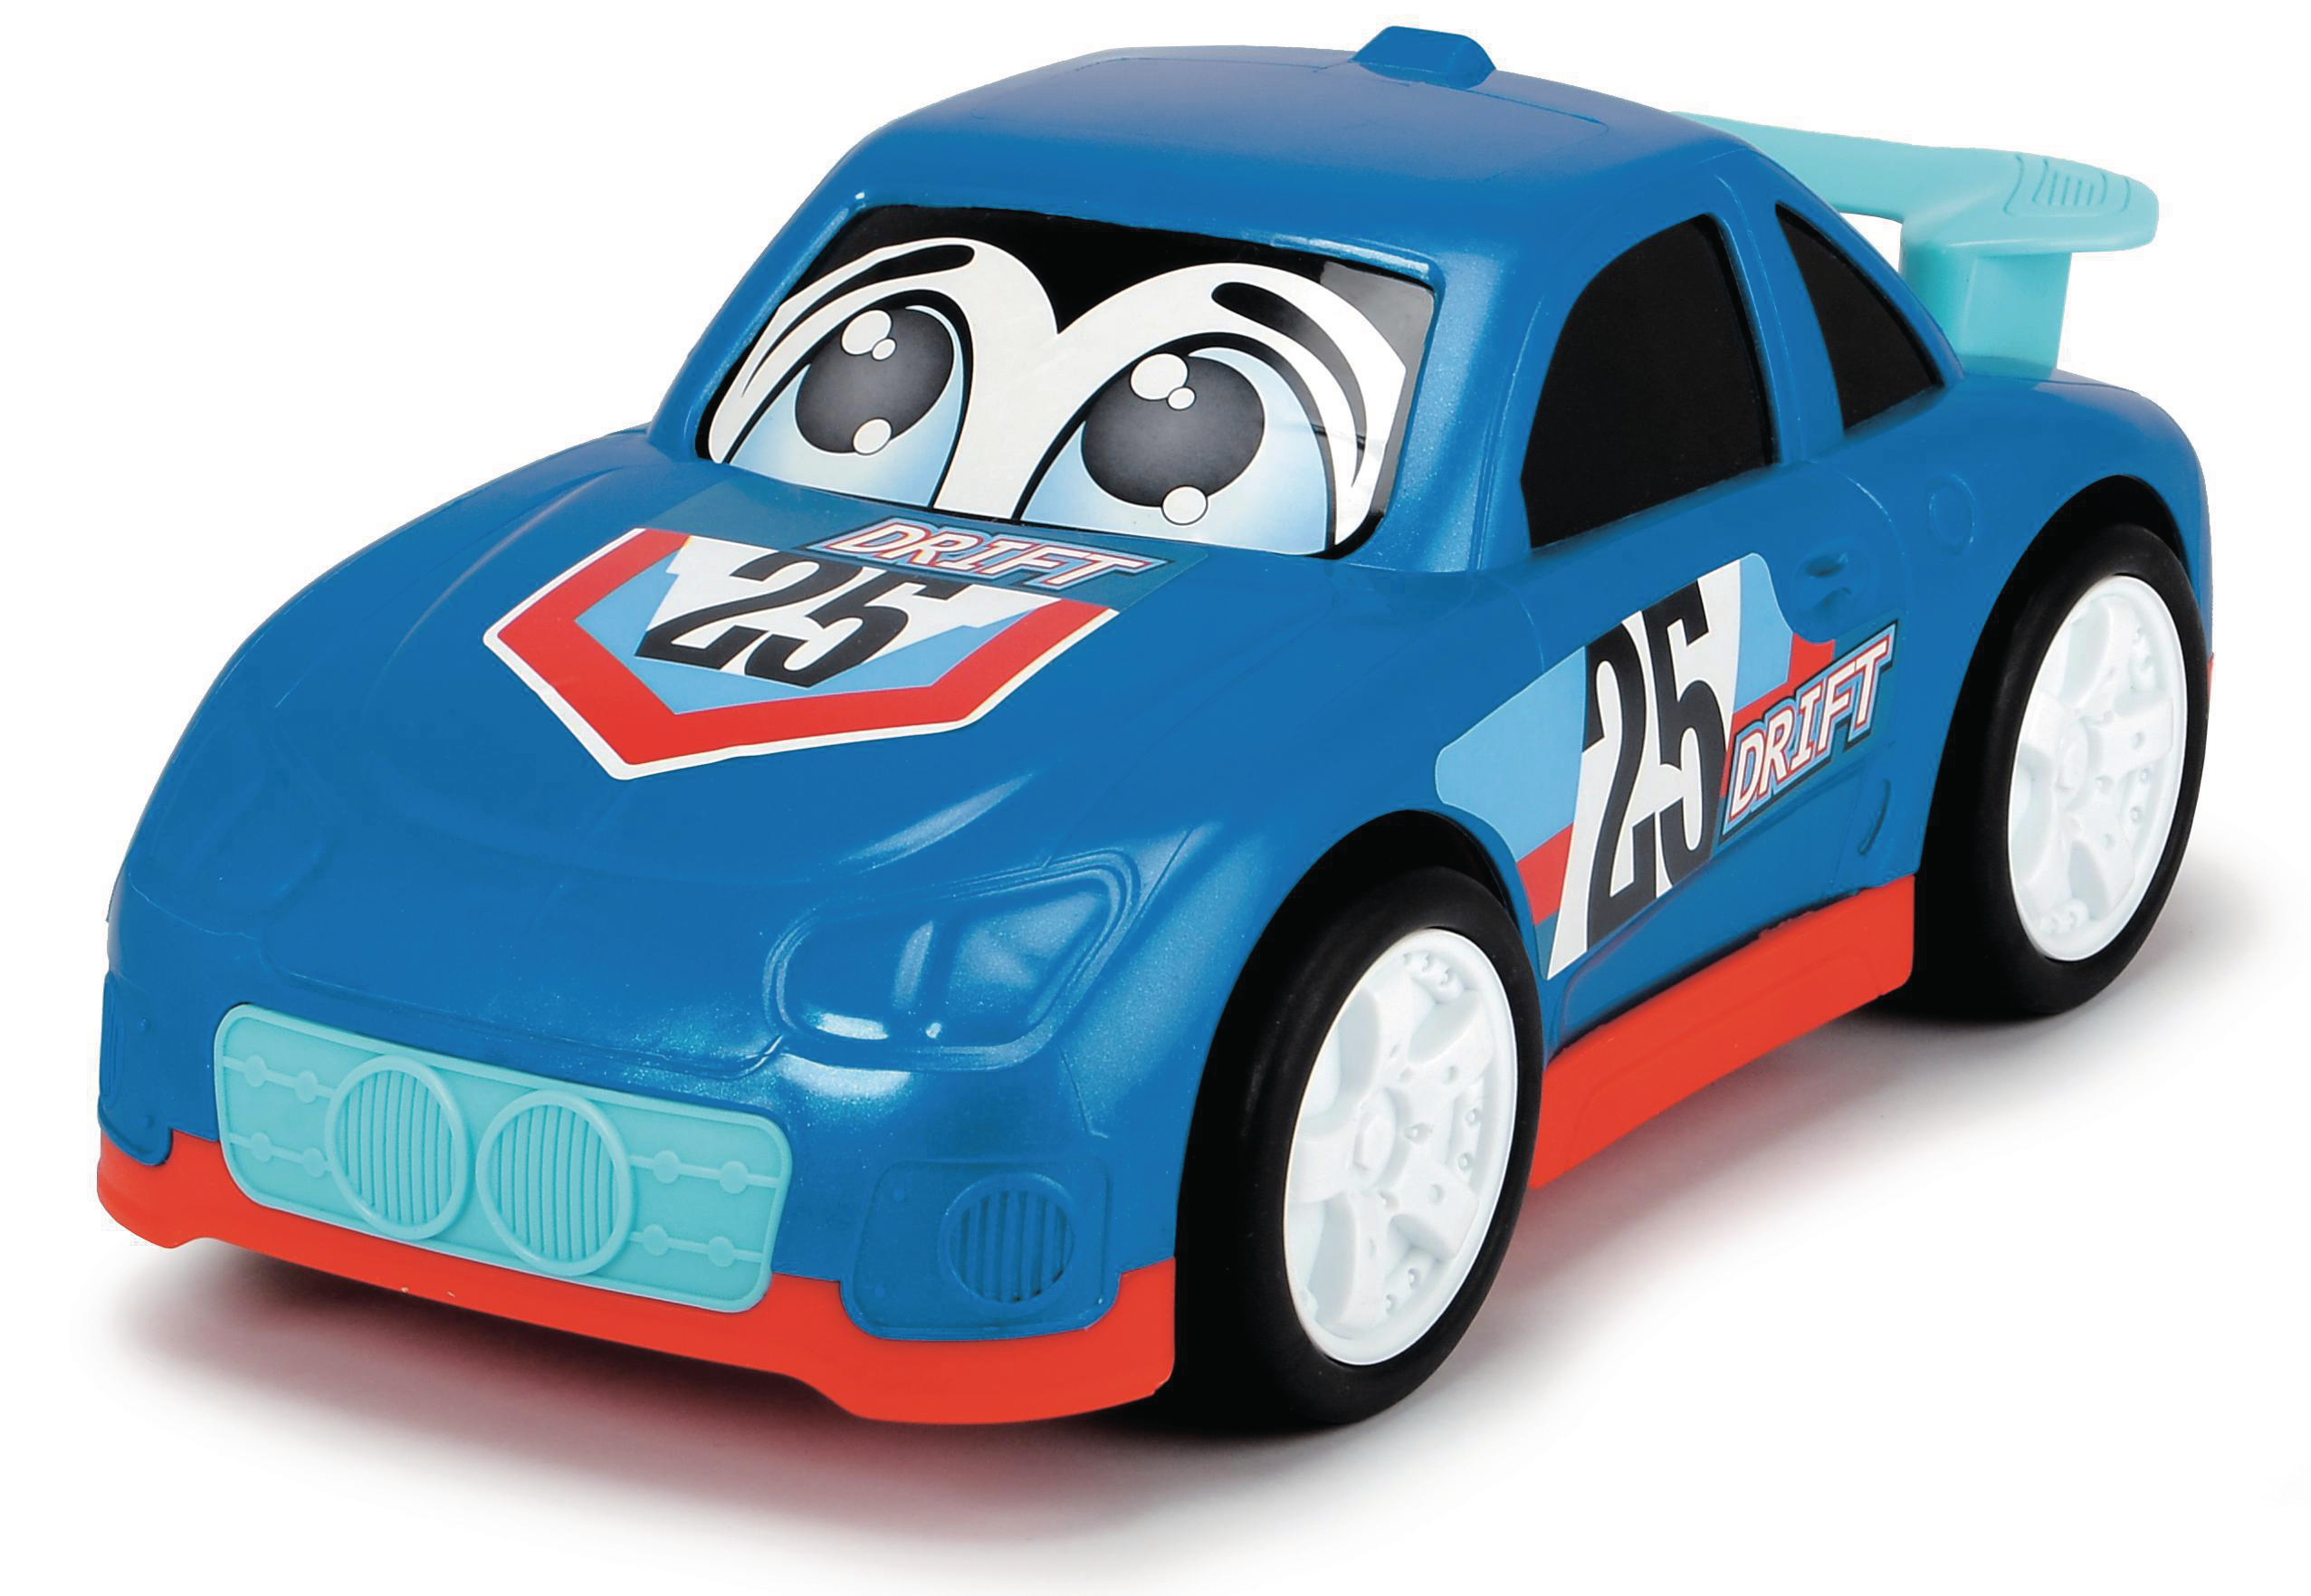 DICKIE-TOYS ABC Speedy, 6-sortiert Spielzeugauto Mehrfarbig Spielzeugauto